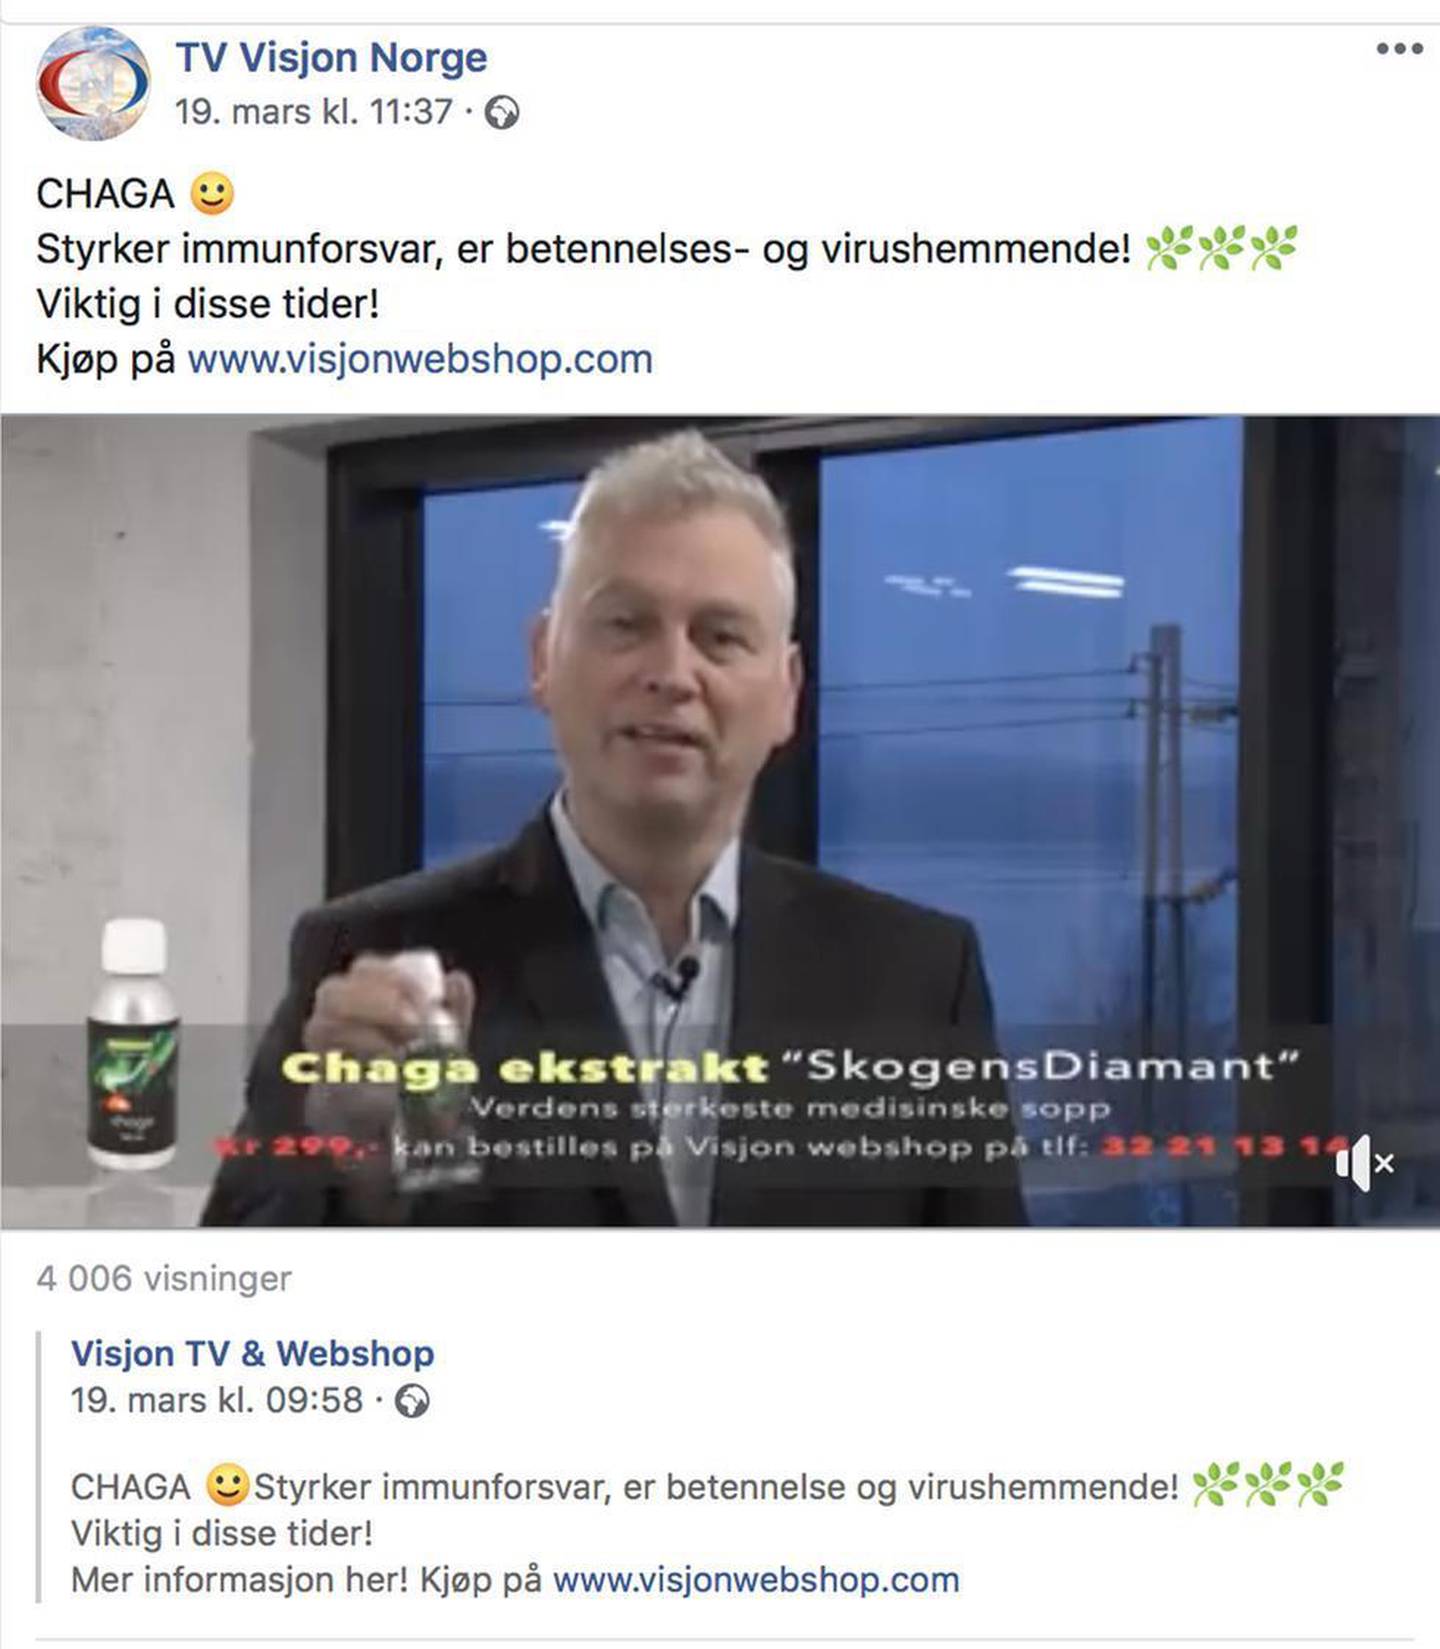 Slik ble det annonsert på Facebook-siden til TV Visjon Norge tidligere i år. Chaga «styrker immunforsvar, er betennelses- og virushemmende. Viktig i disse tider!», het det i reklamen for kosttilskuddet.